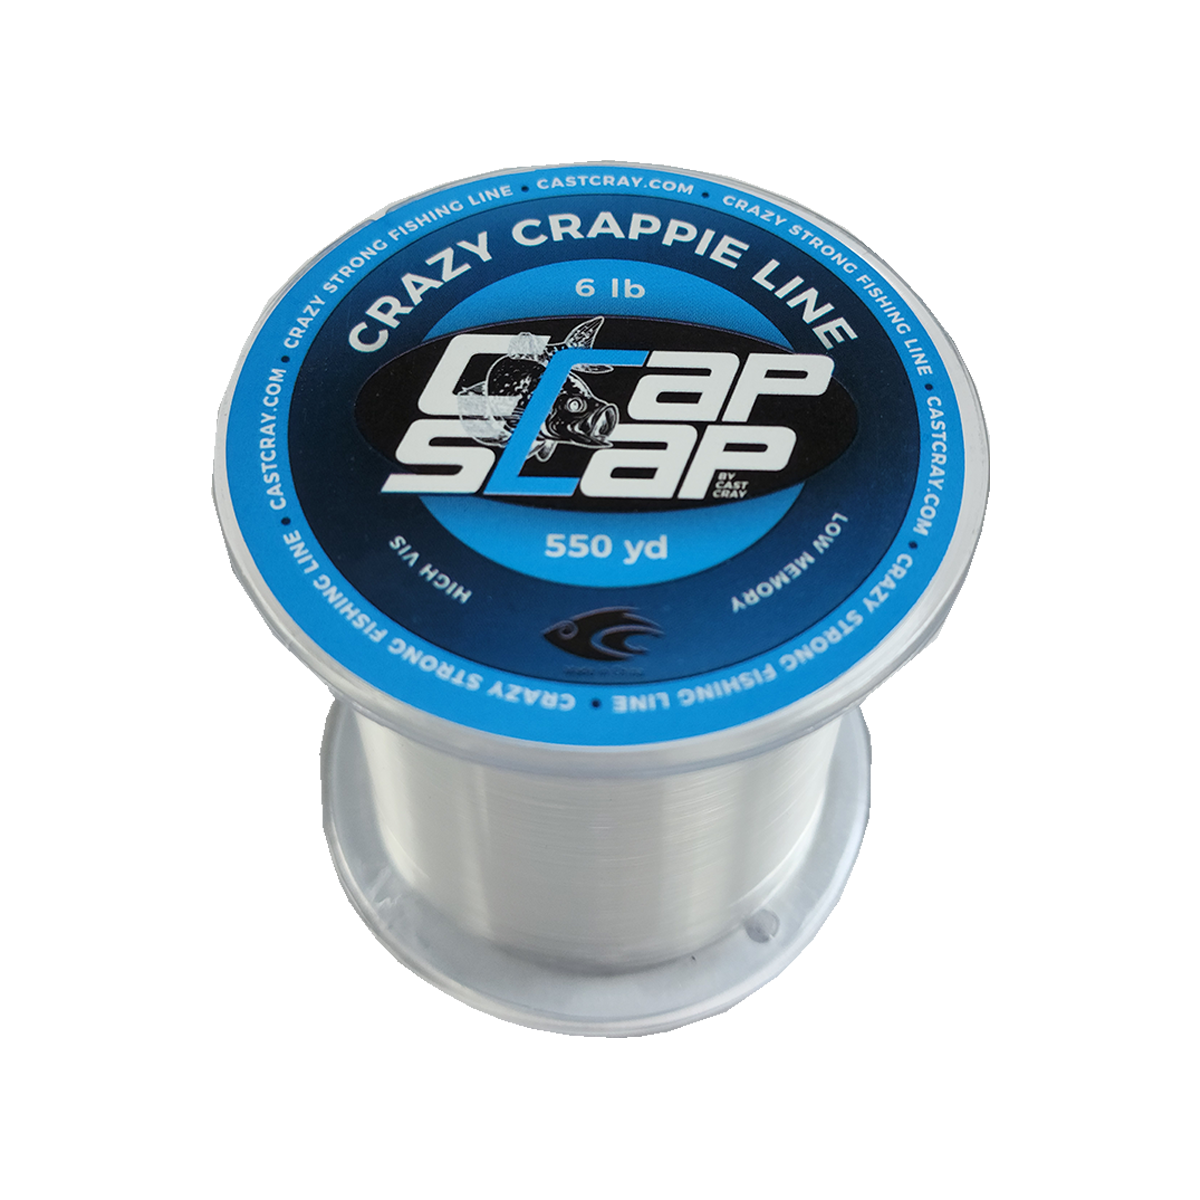 Crap Slap - Crazy Crappie Line - Clear 6lb - Cast Cray Outdoors